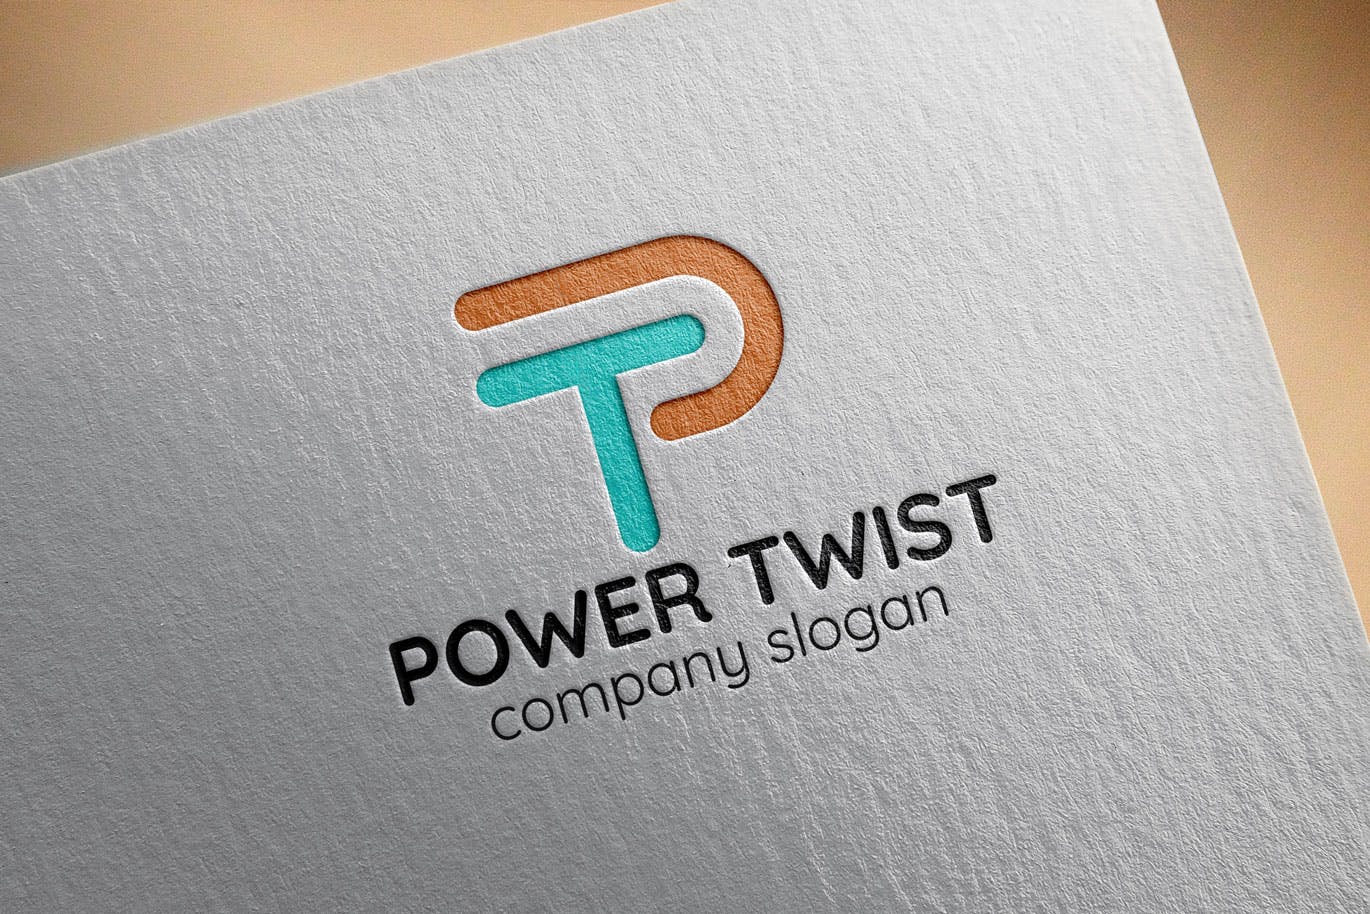 P字母图形创意Logo设计素材库精选模板 Power Twist Creative Logo Template插图(2)